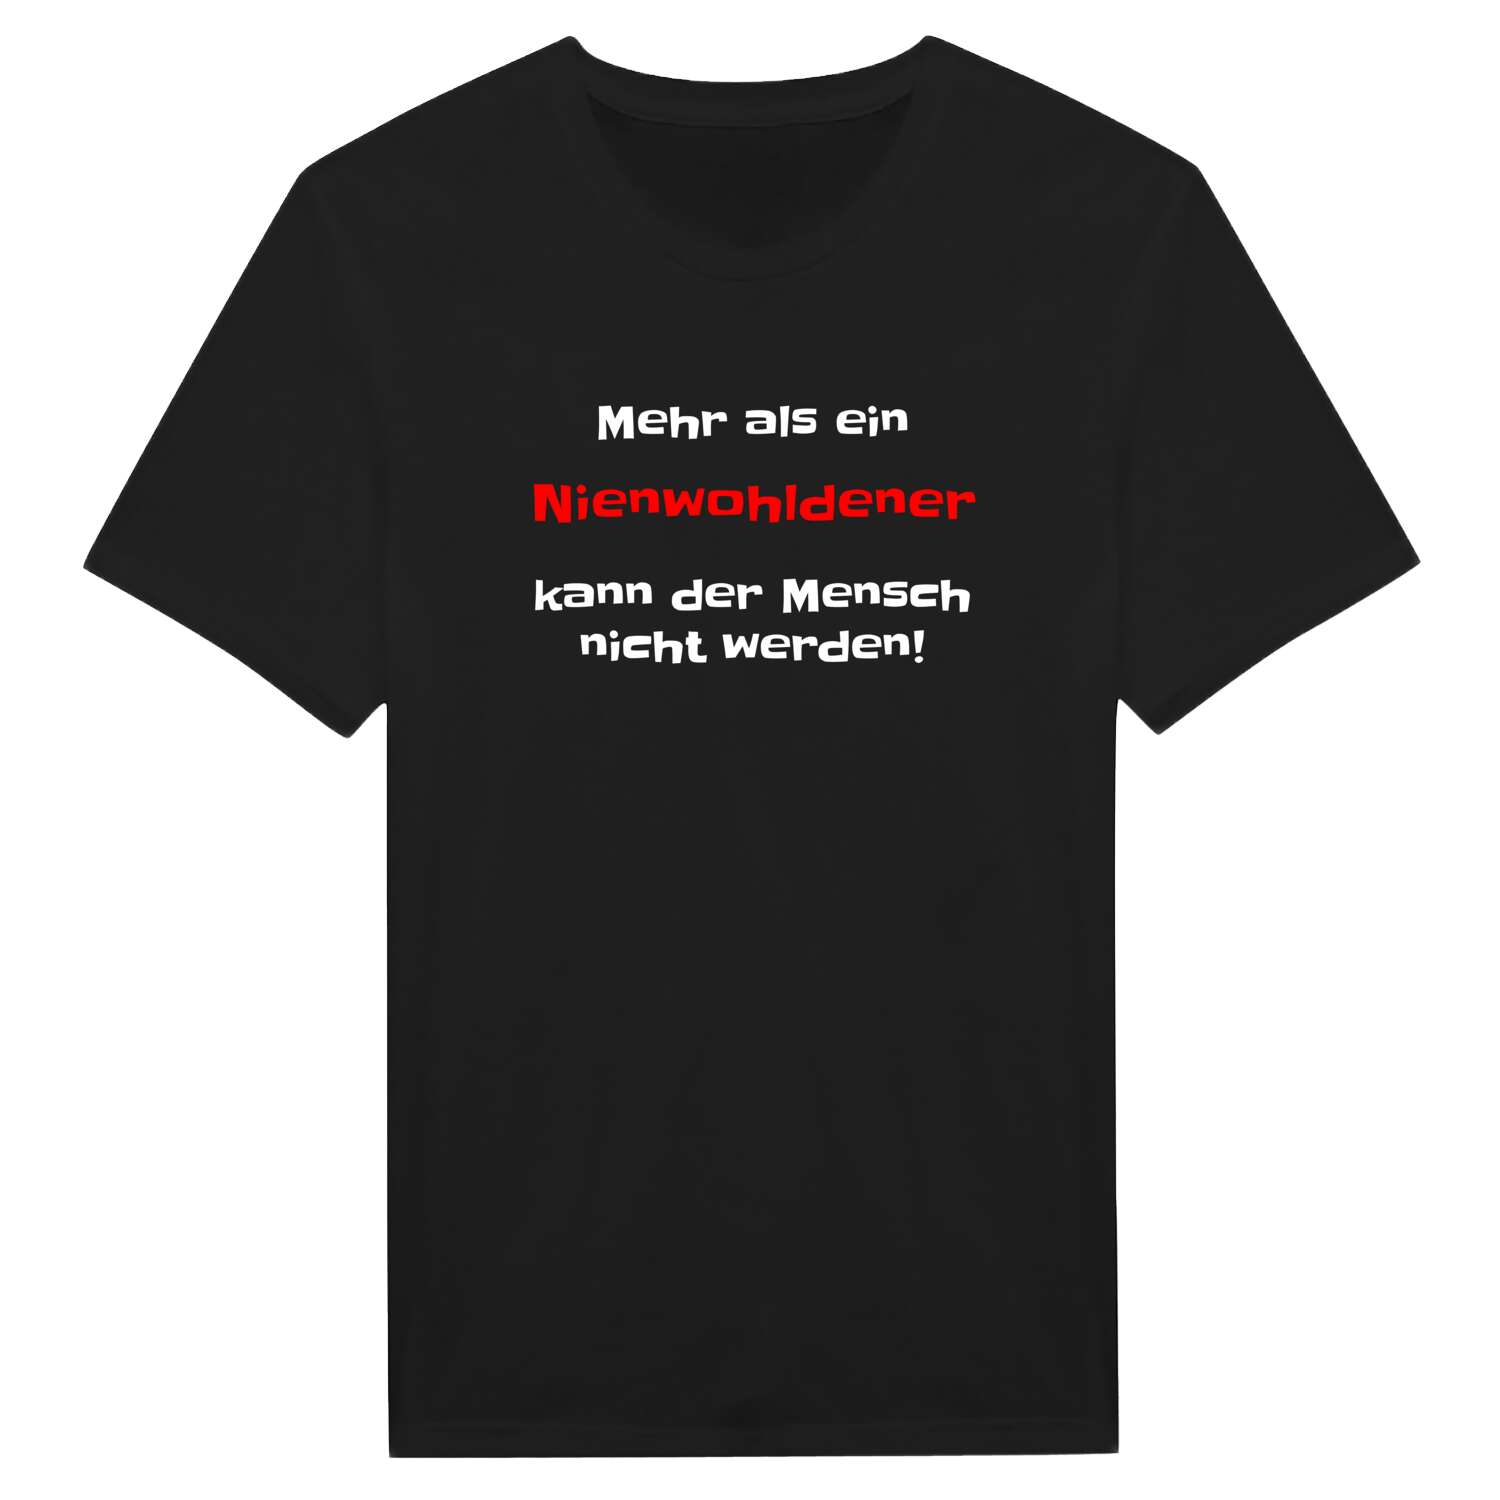 Nienwohlde T-Shirt »Mehr als ein«